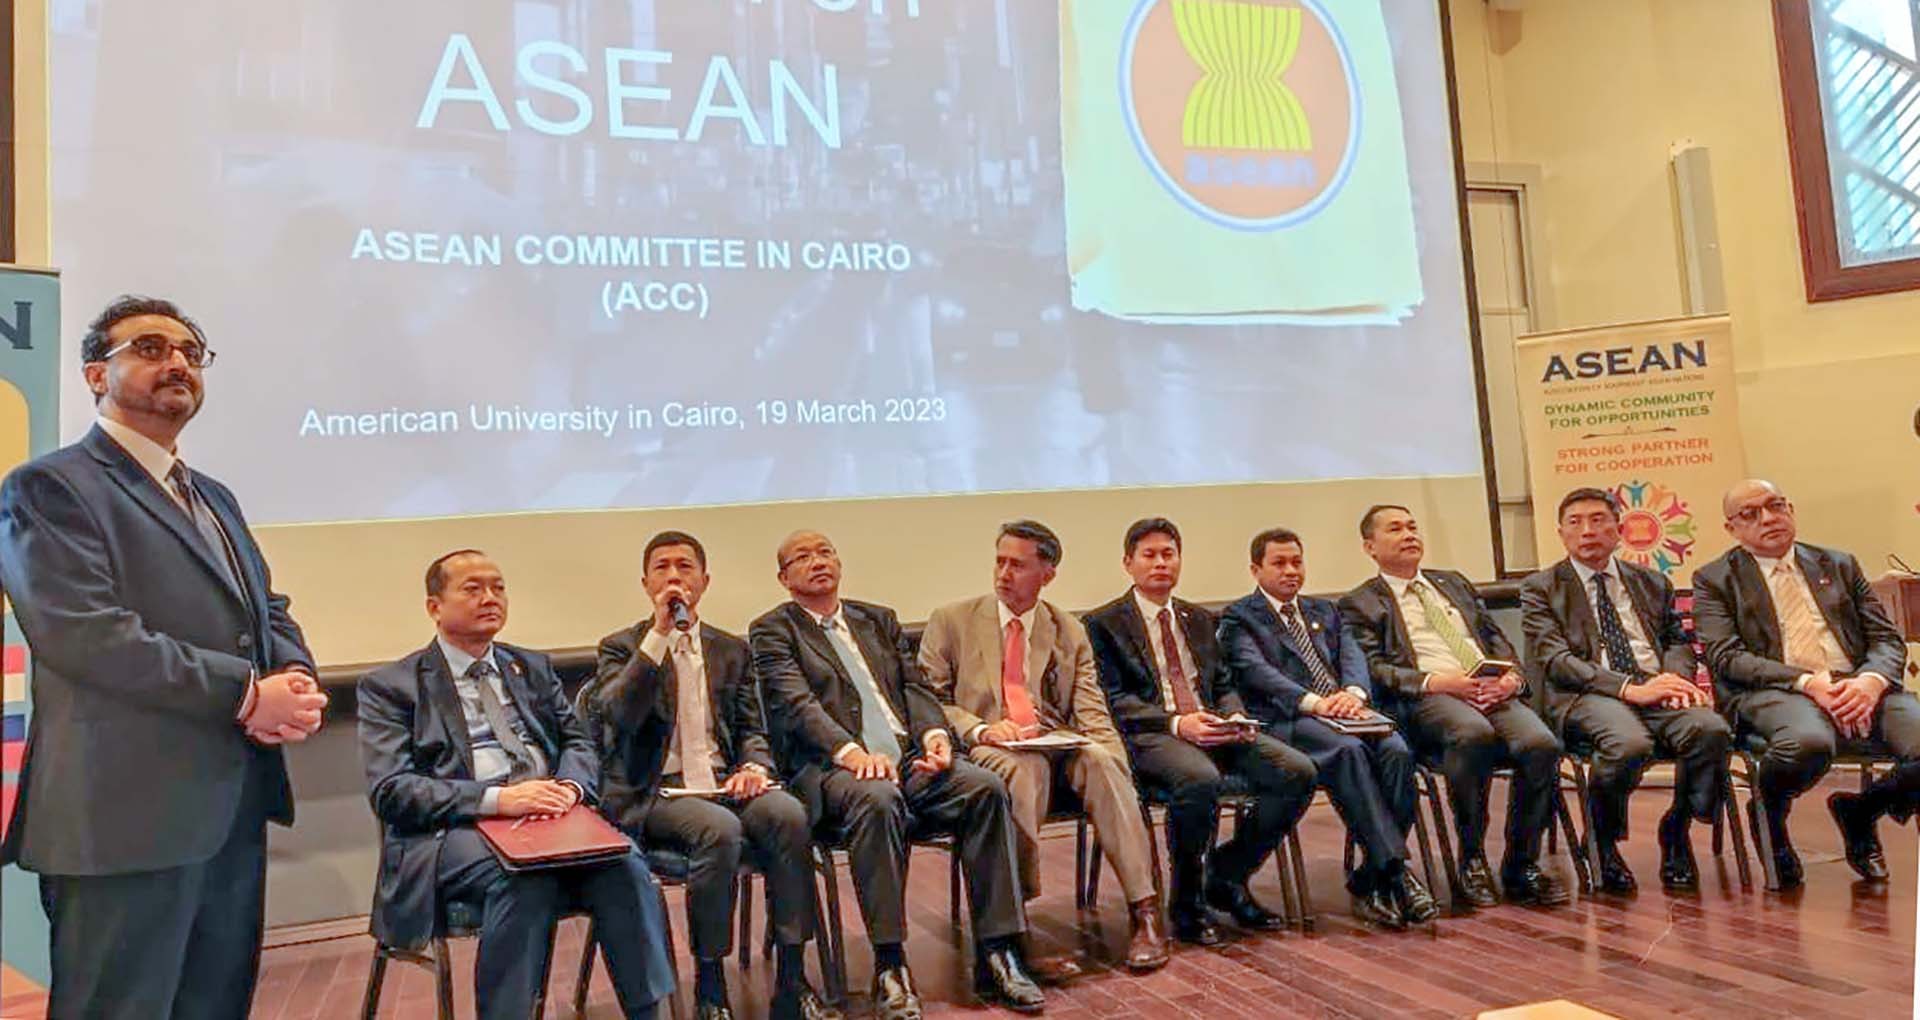 Đại sứ các nước ASEAN tại Ai Cập phối hợp với lãnh đạo Đại học Mỹ ở Cairo tổ chức tọa đàm dành cho sinh viên của trường.